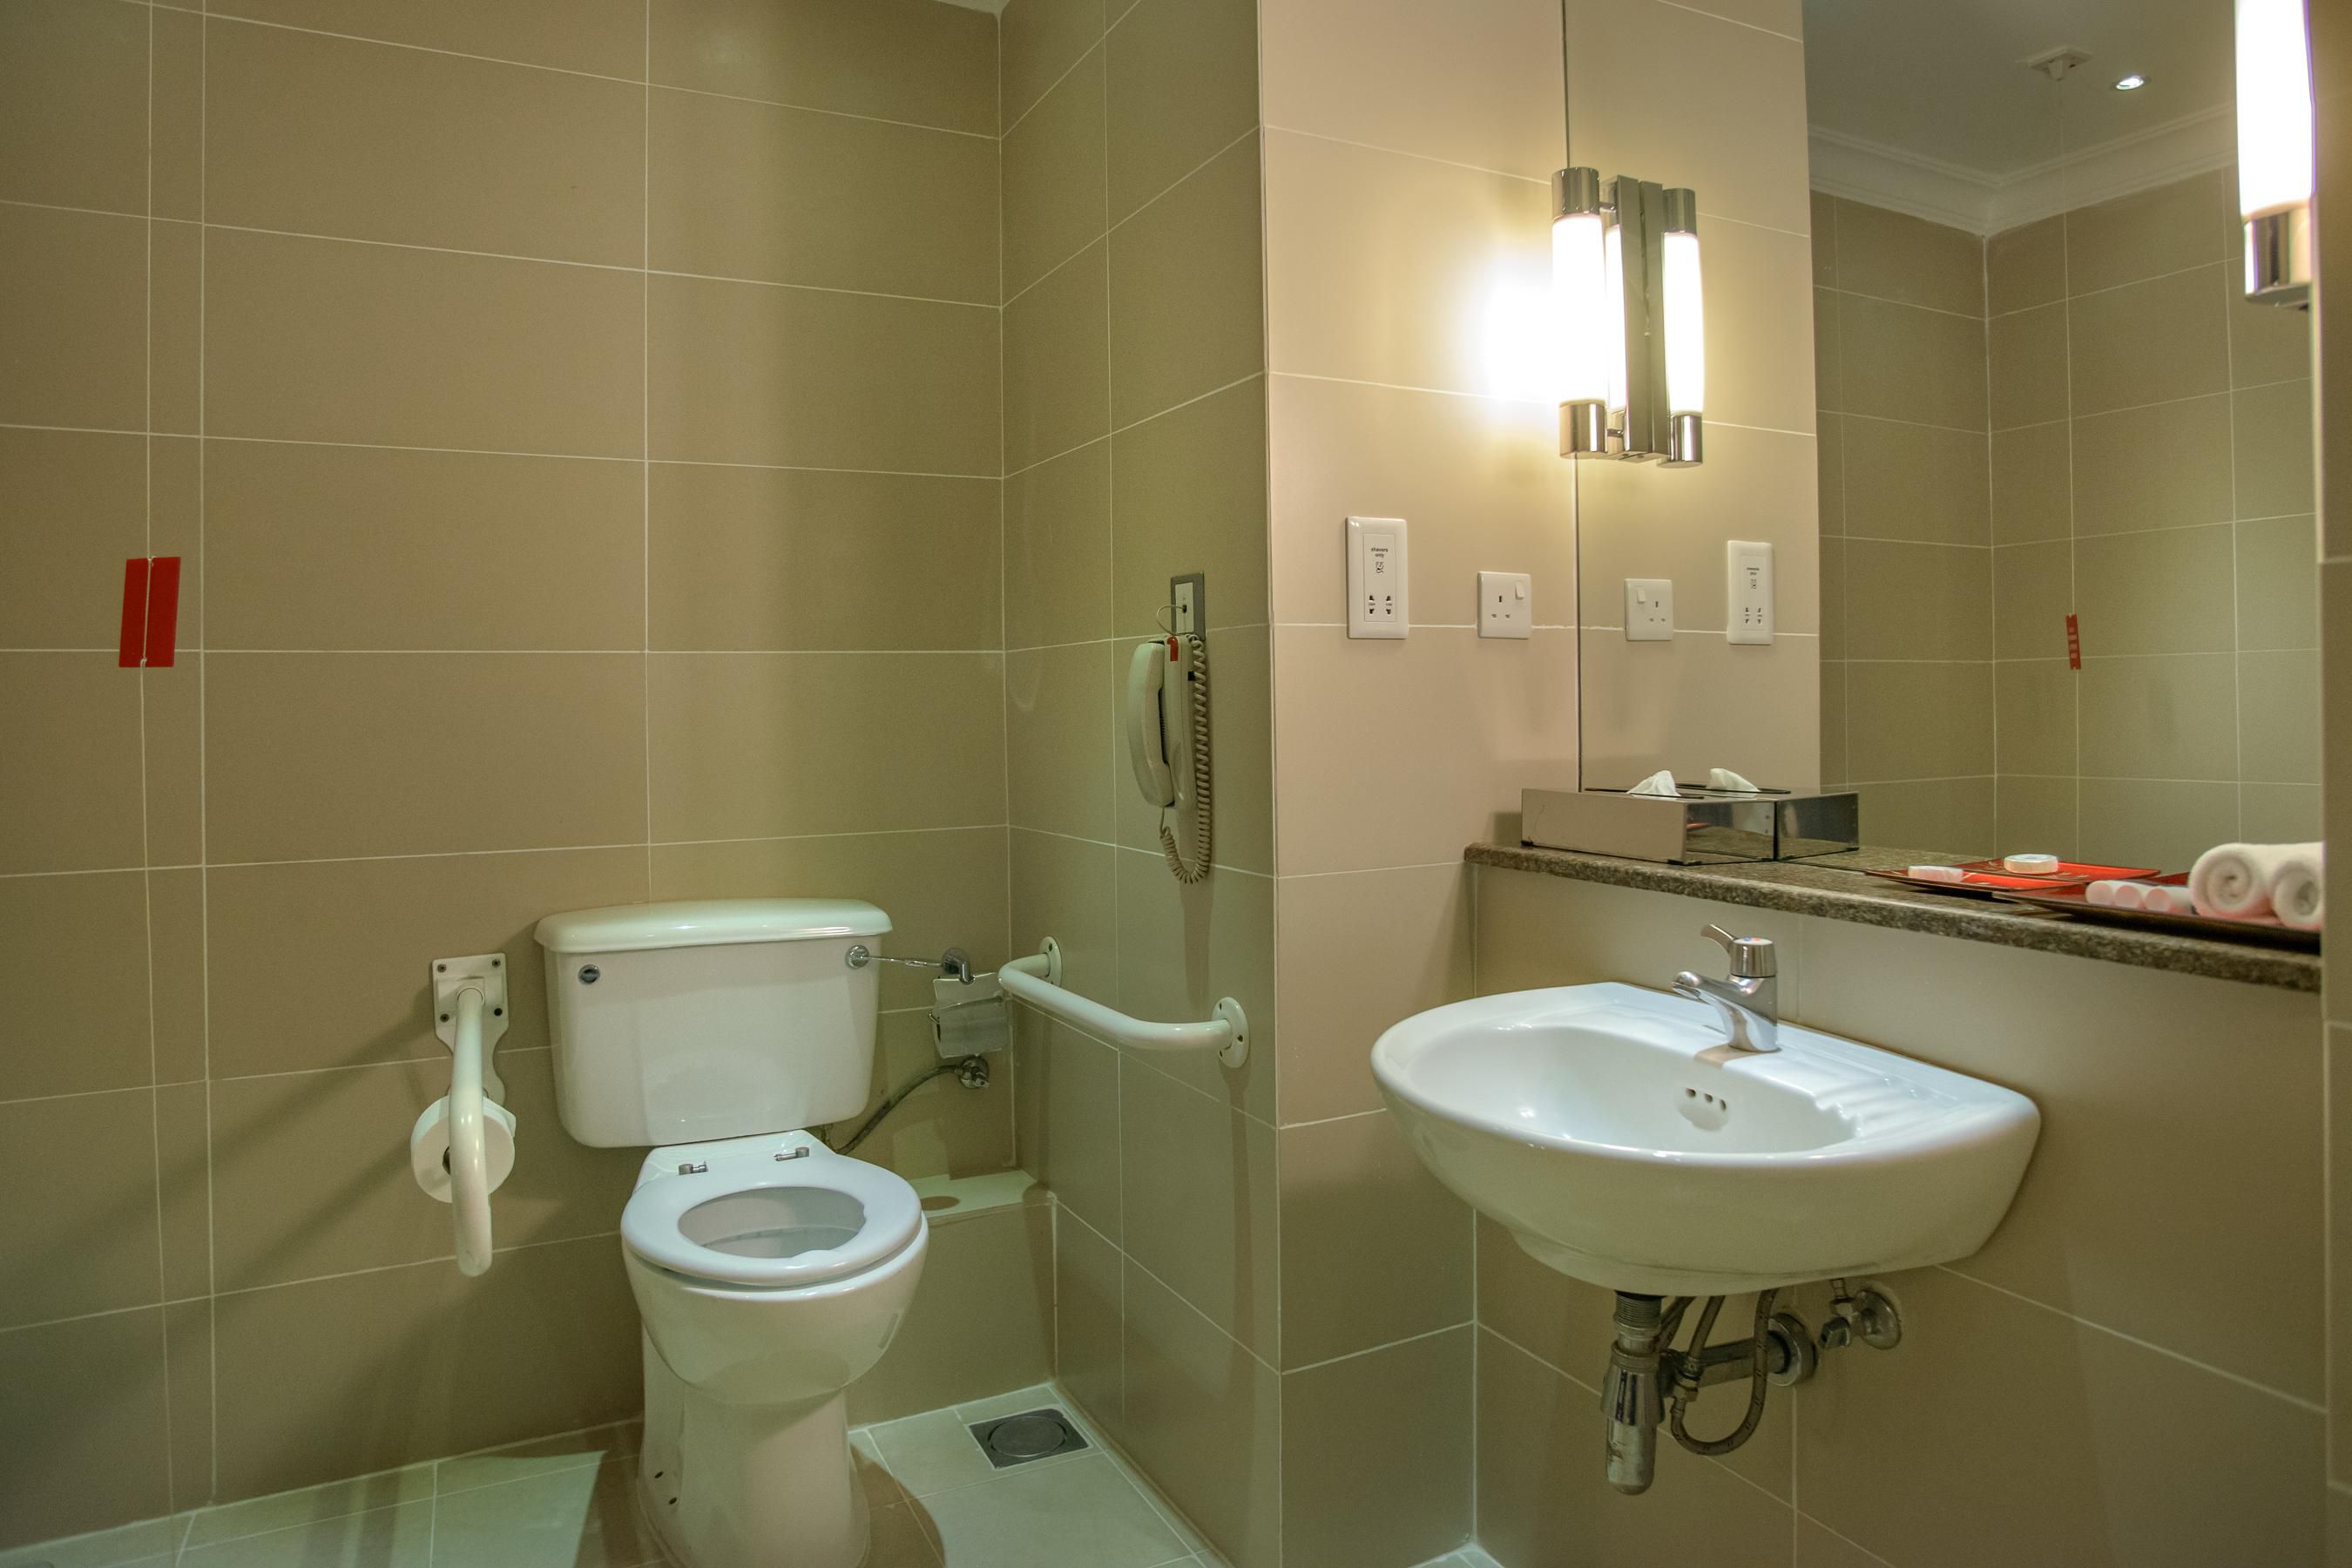  Bathroom - paraplegic rooms